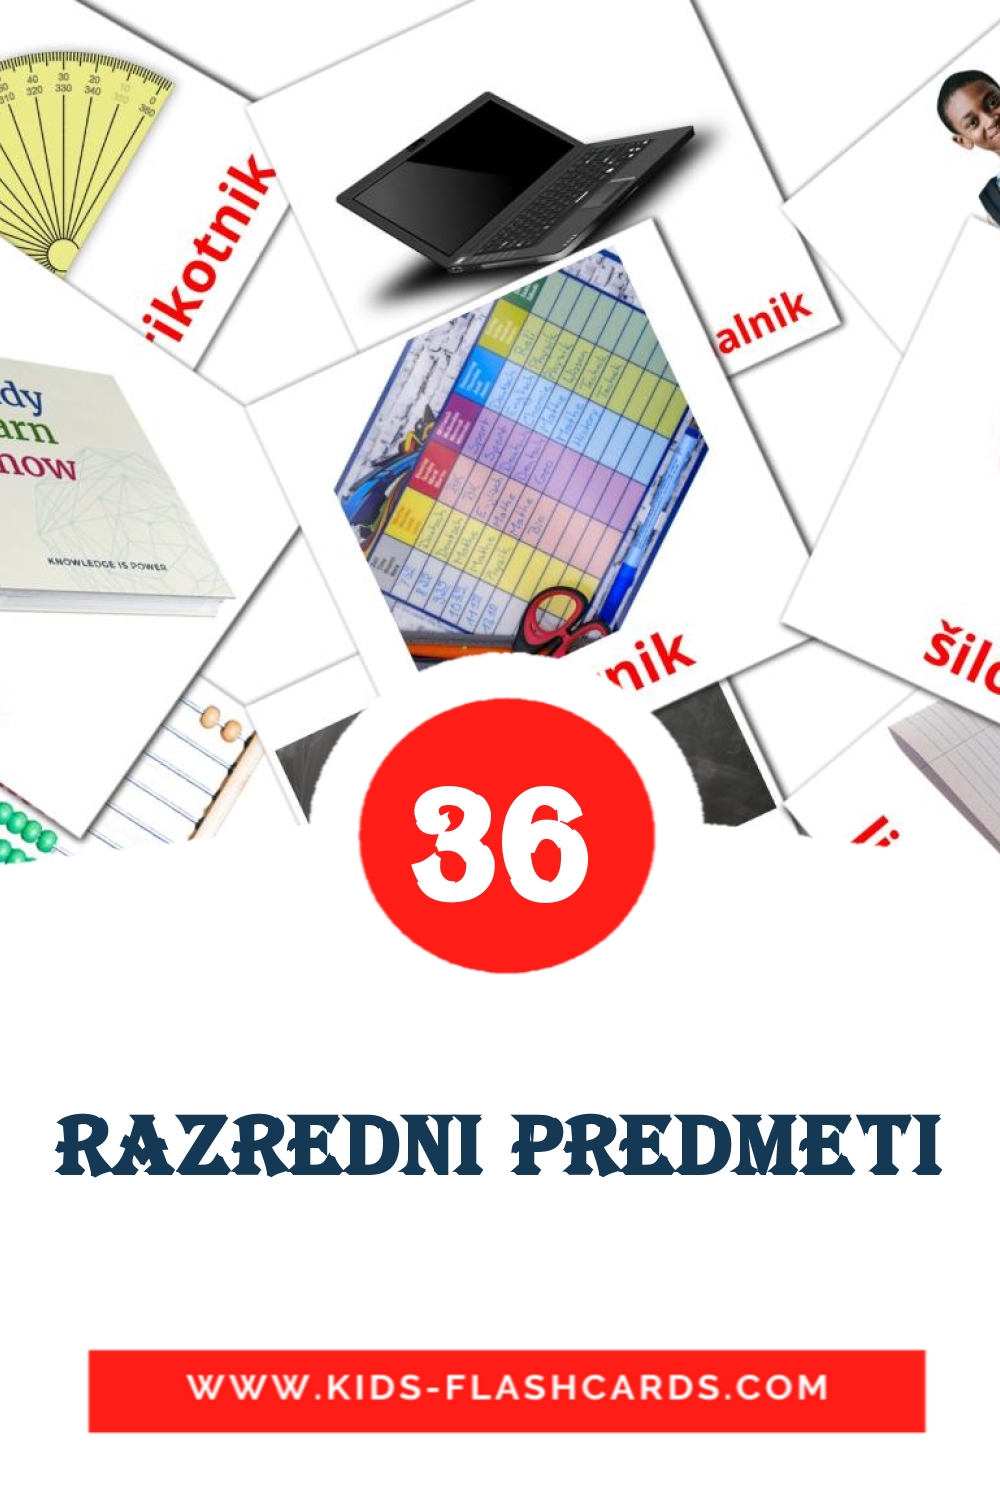 36 Razredni predmeti fotokaarten voor kleuters in het Slowenisch